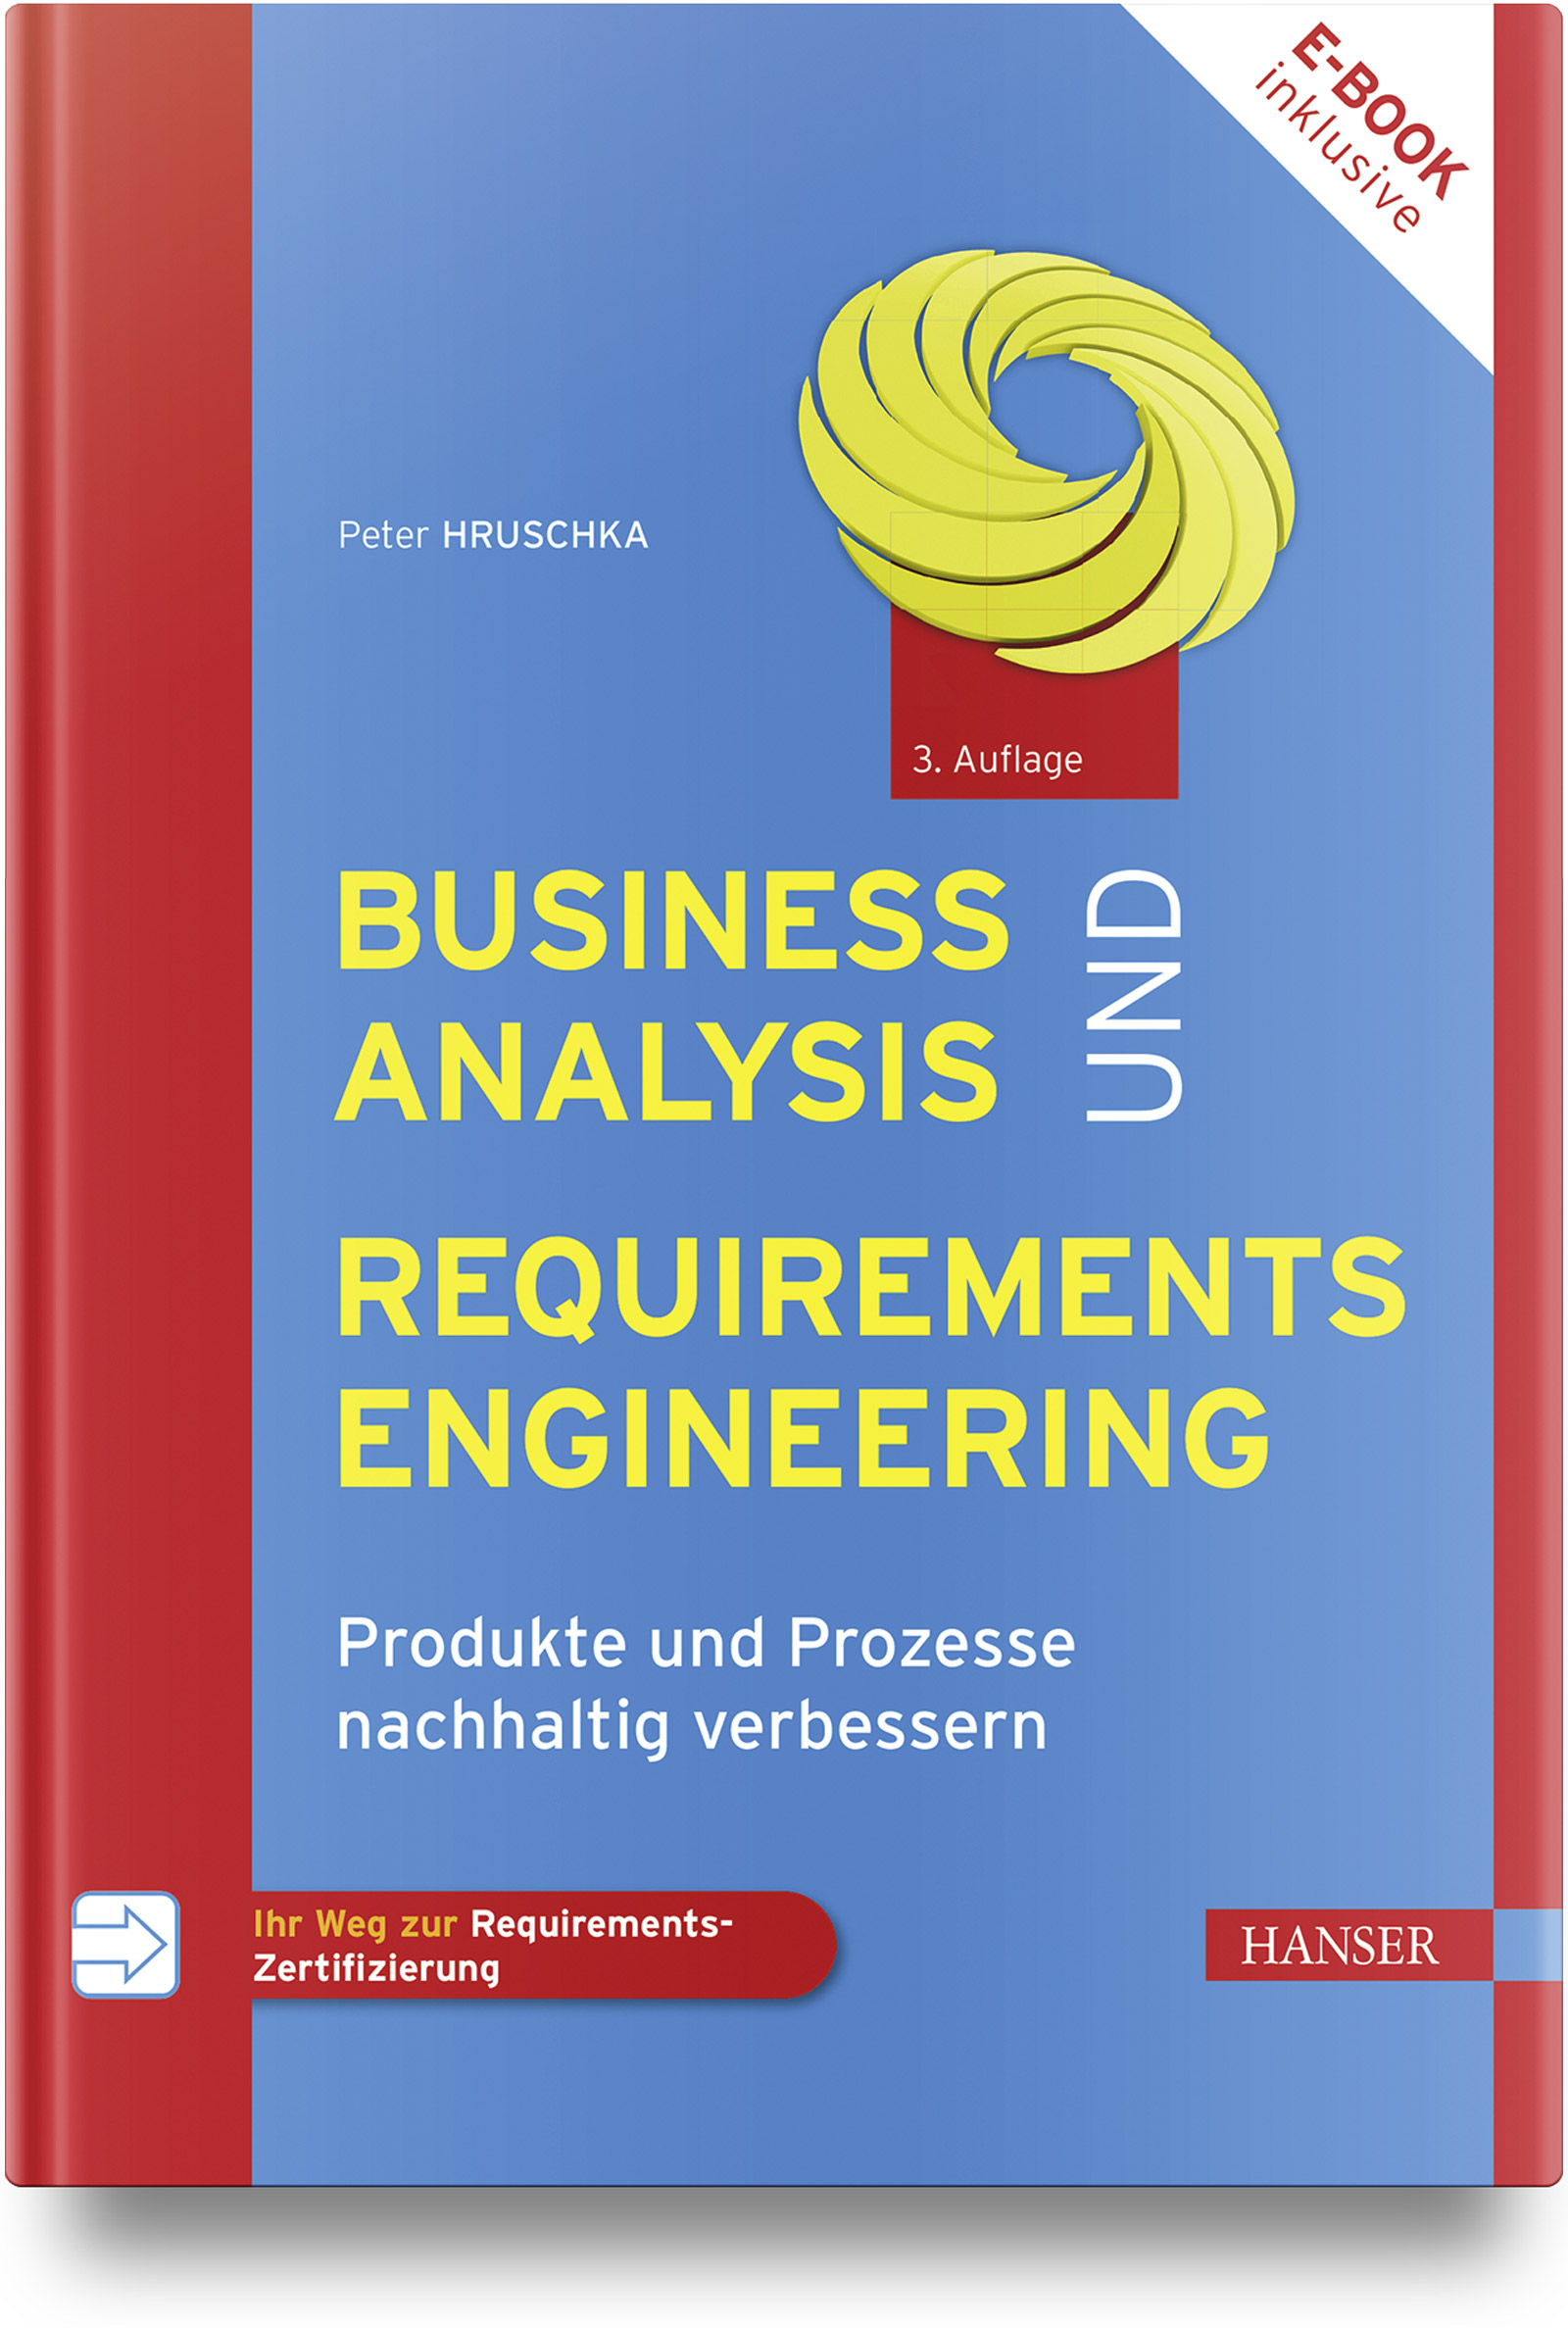 Business Analysis und Requirements Engineering (3. Auflg.)